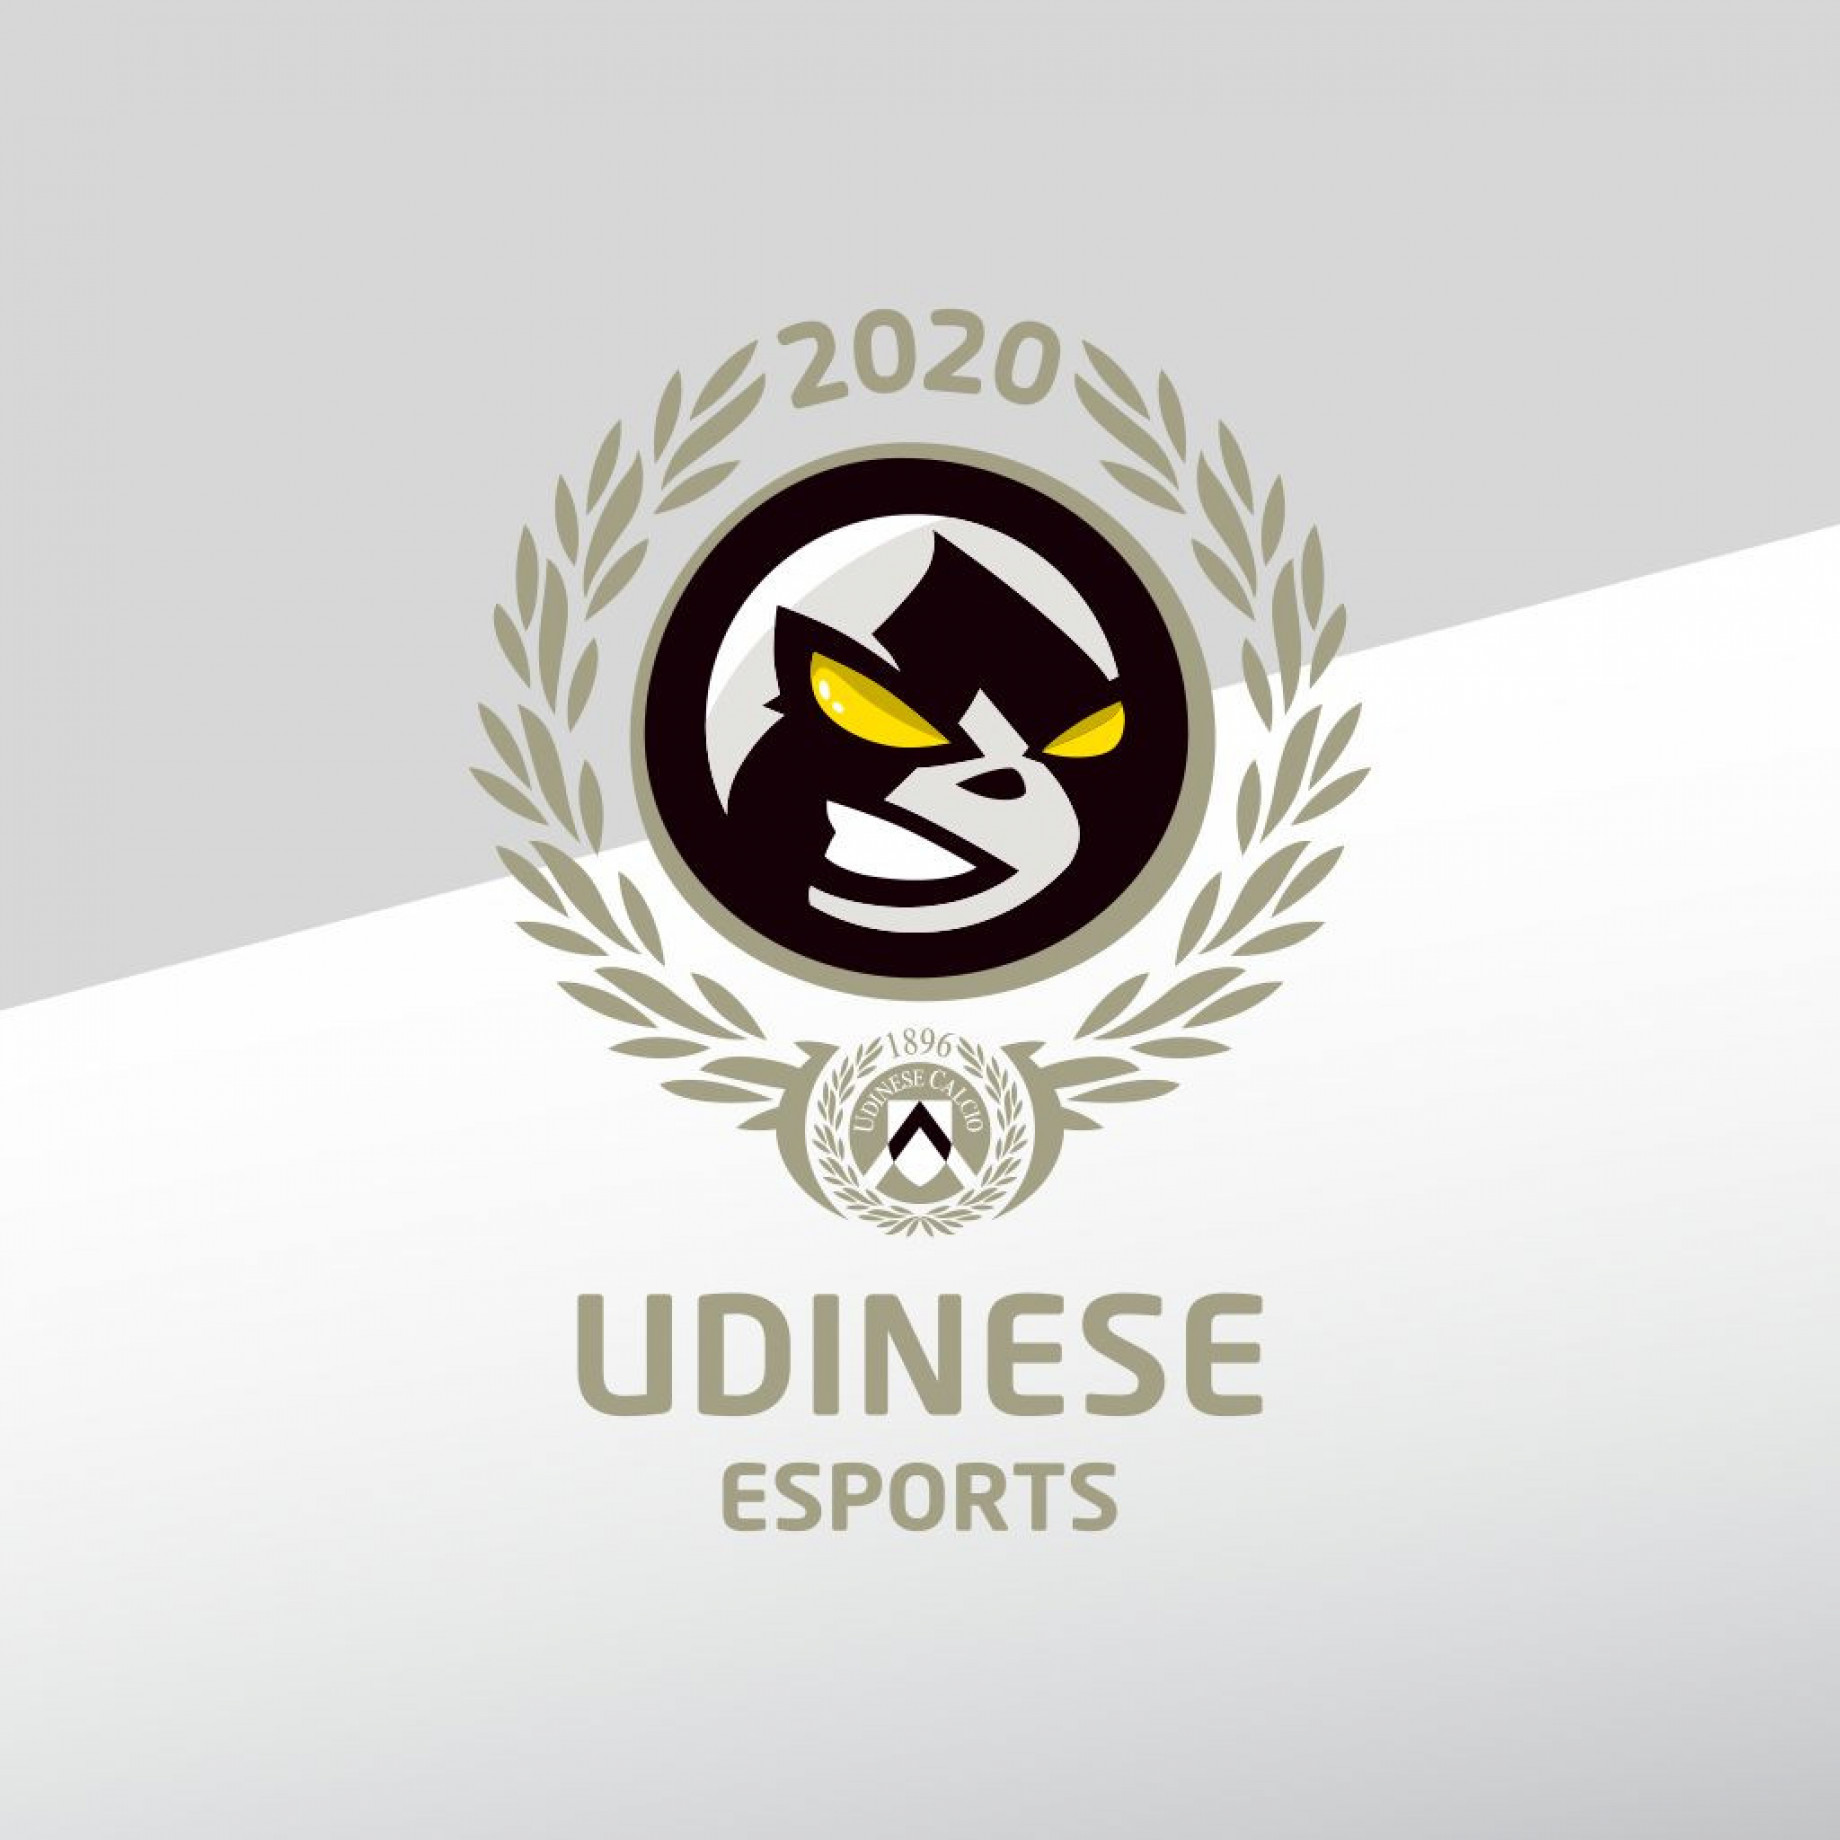 Udinese_ESPORTS_GDM.jpeg